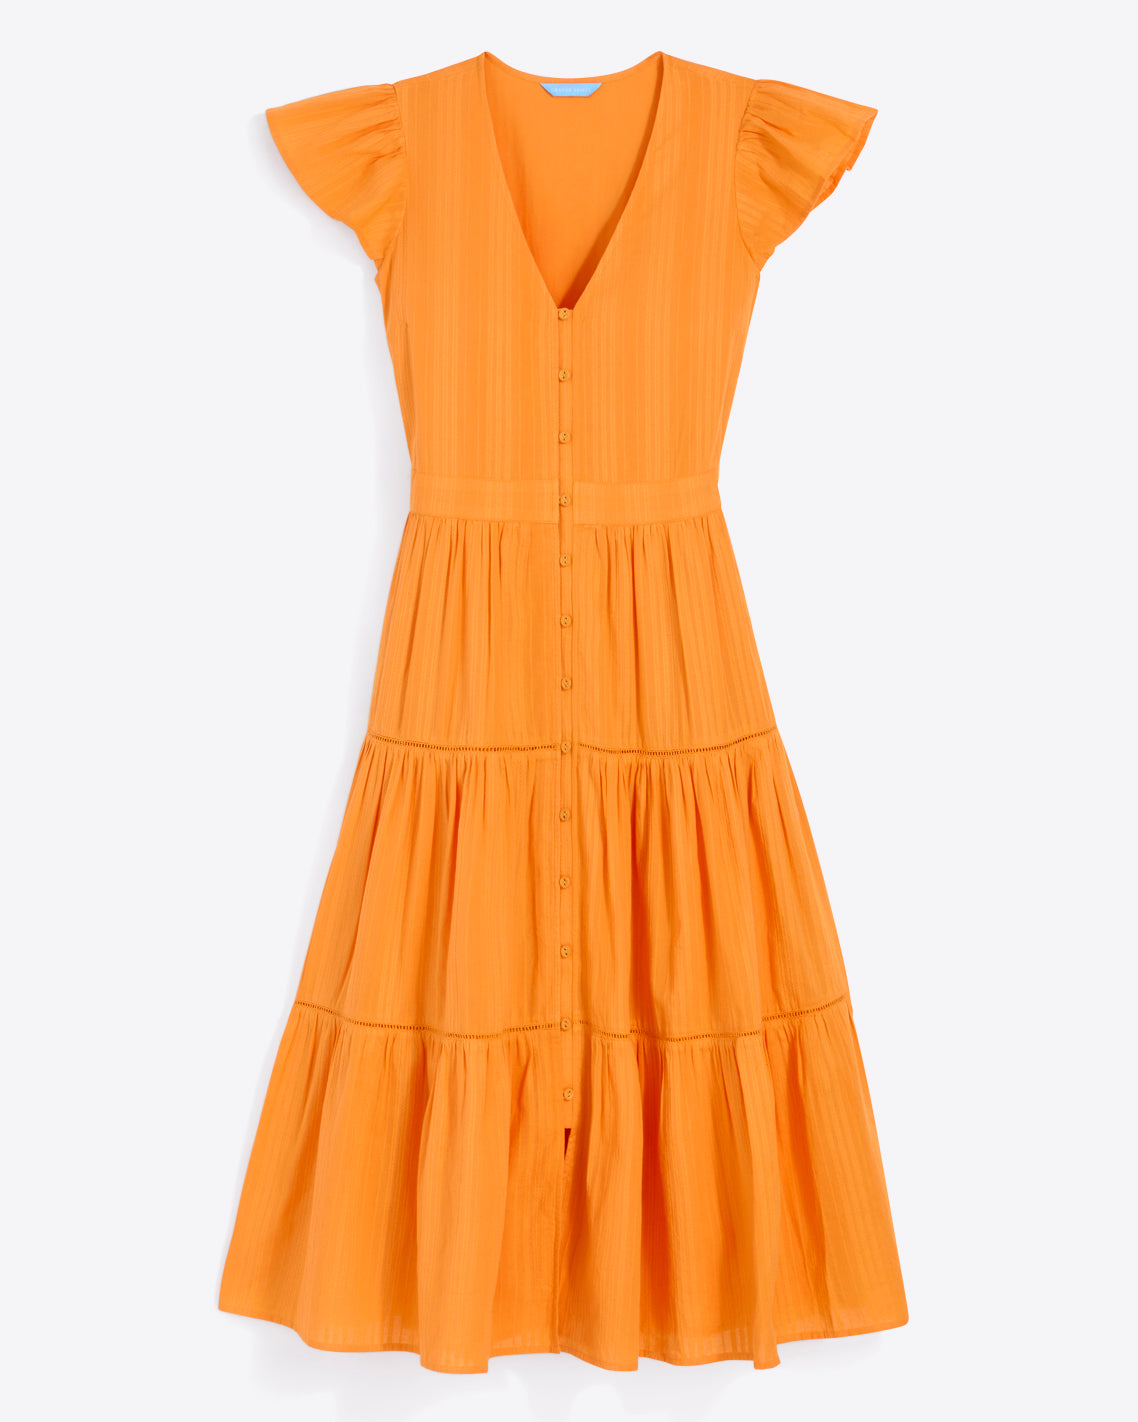 Lainey Midi Dress in Marigold Dobby Stripe